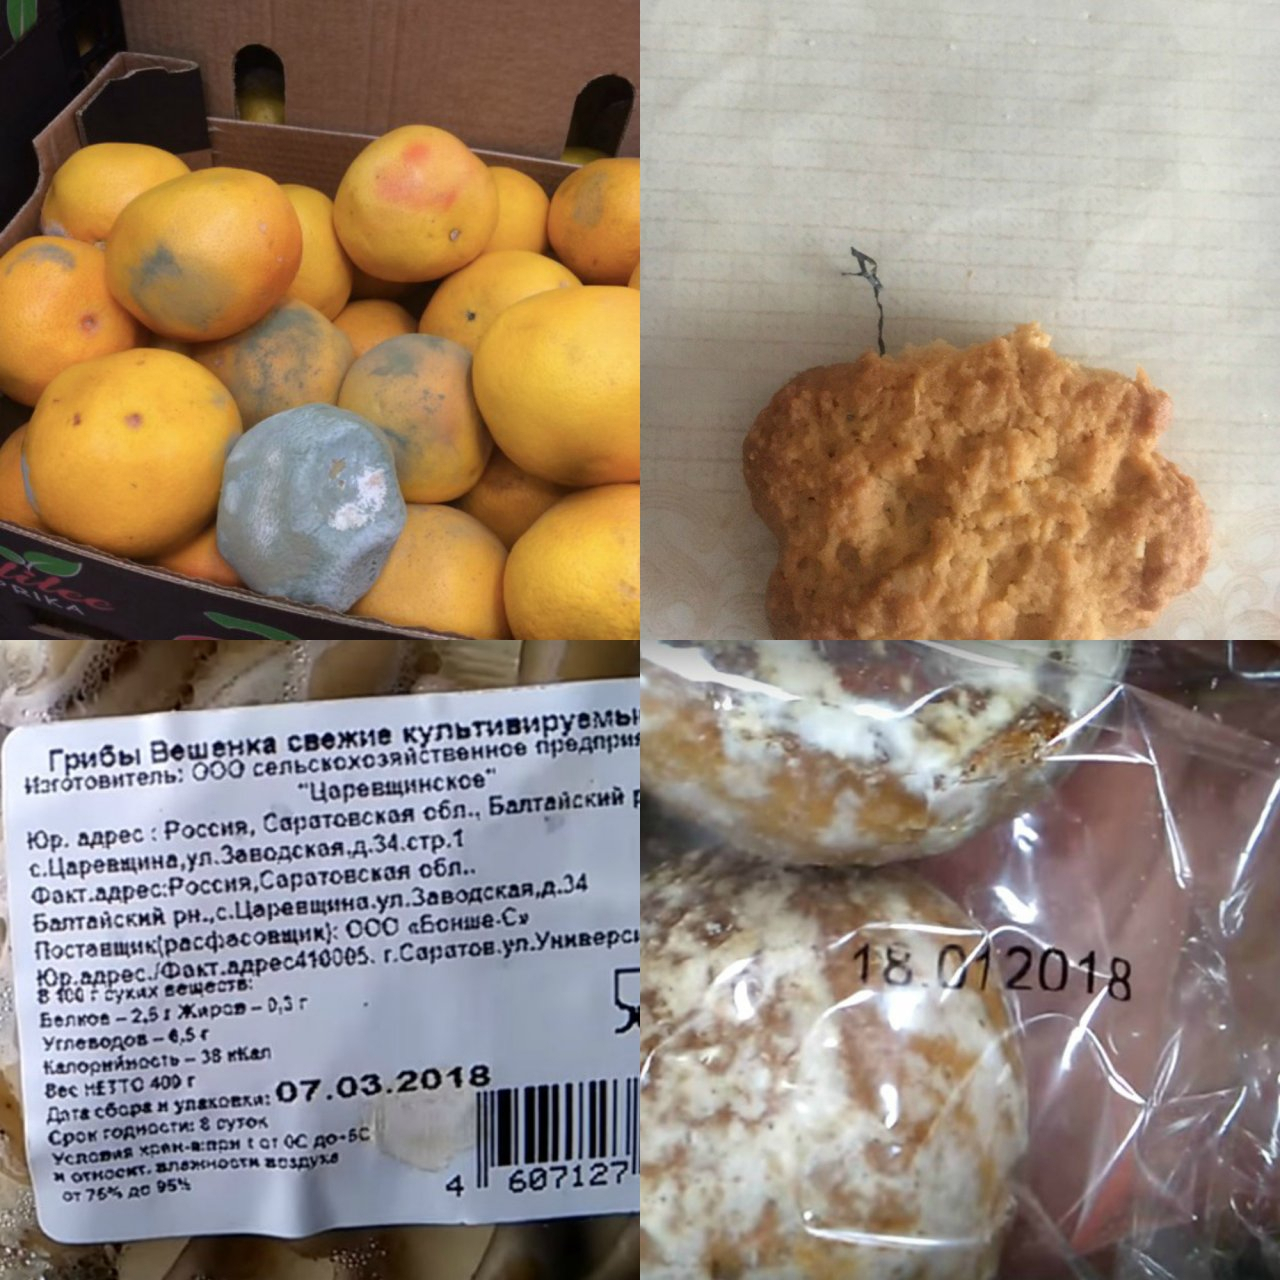 Апельсины в плесени, печенье с проволокой: что делать пензенцам с опасным для жизни товаром?